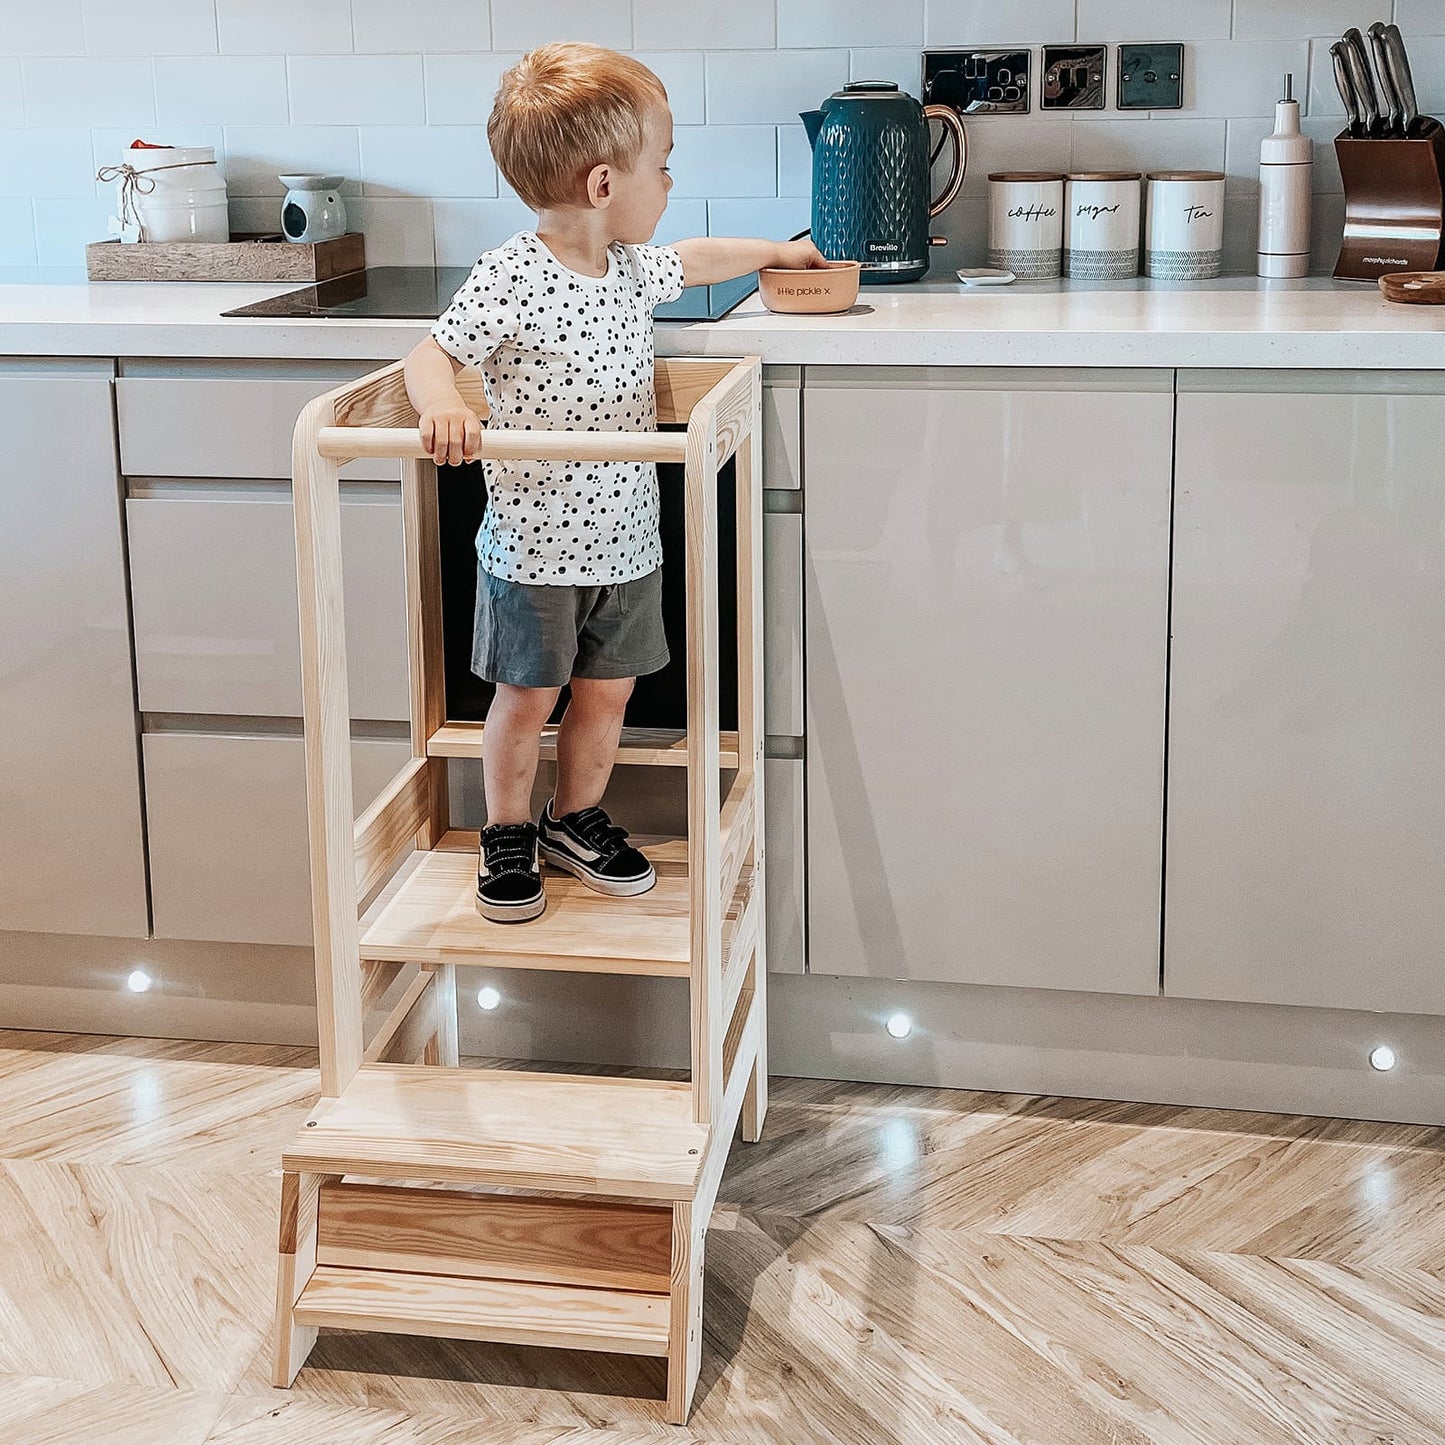 MeowBaby® Kitchen Helper z Tablicą Drewniany Pomocnik Kuchenny dla Dziecka, Biały